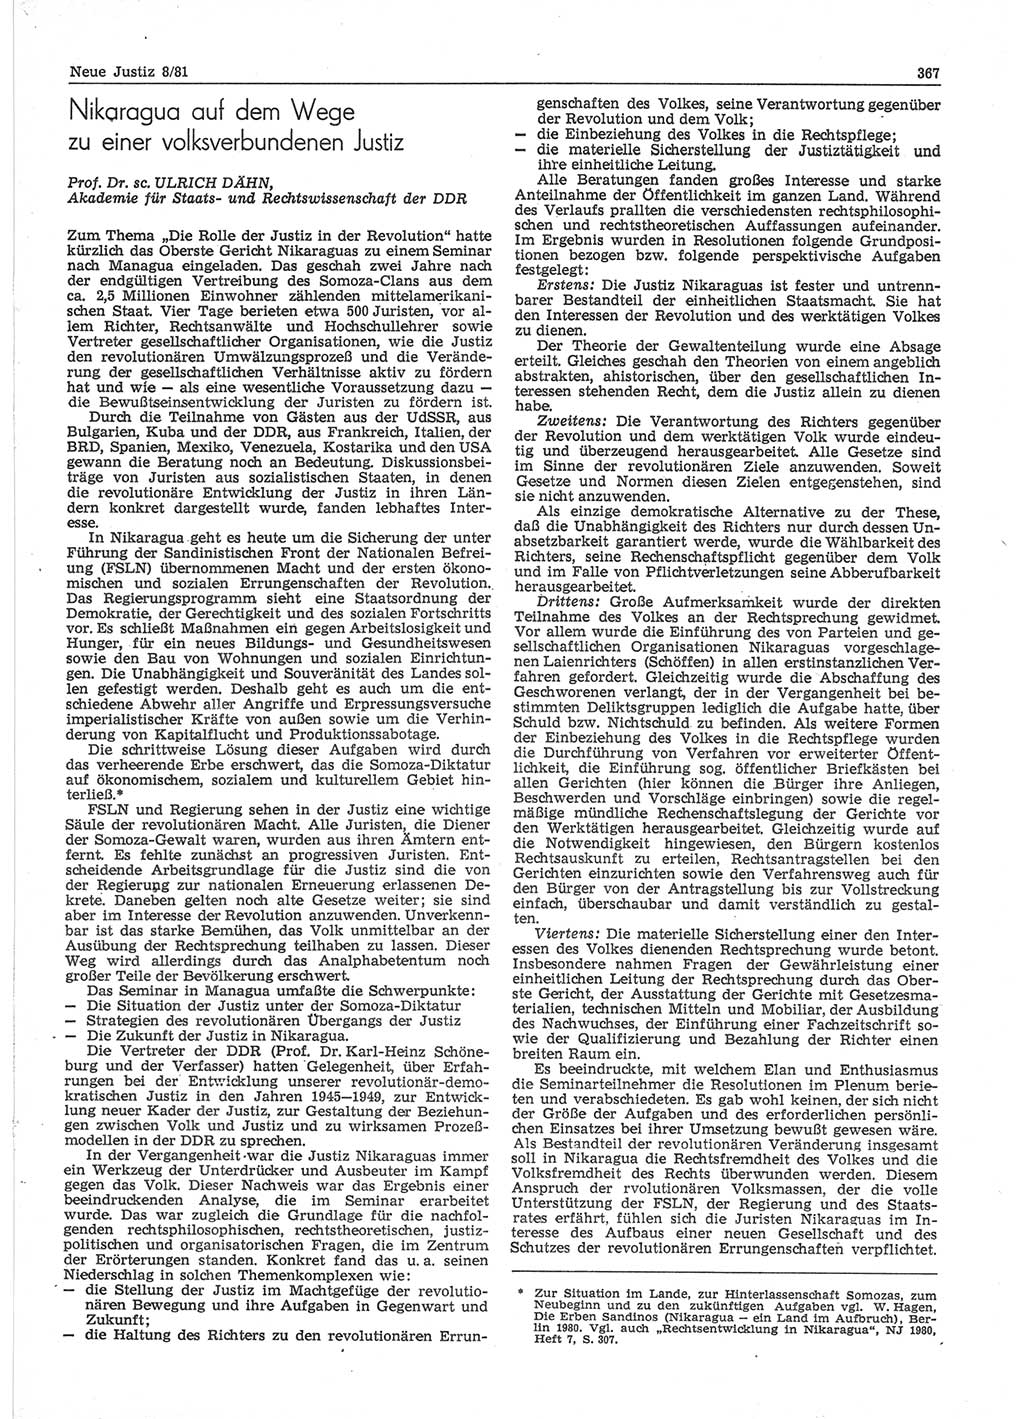 Neue Justiz (NJ), Zeitschrift für sozialistisches Recht und Gesetzlichkeit [Deutsche Demokratische Republik (DDR)], 35. Jahrgang 1981, Seite 367 (NJ DDR 1981, S. 367)